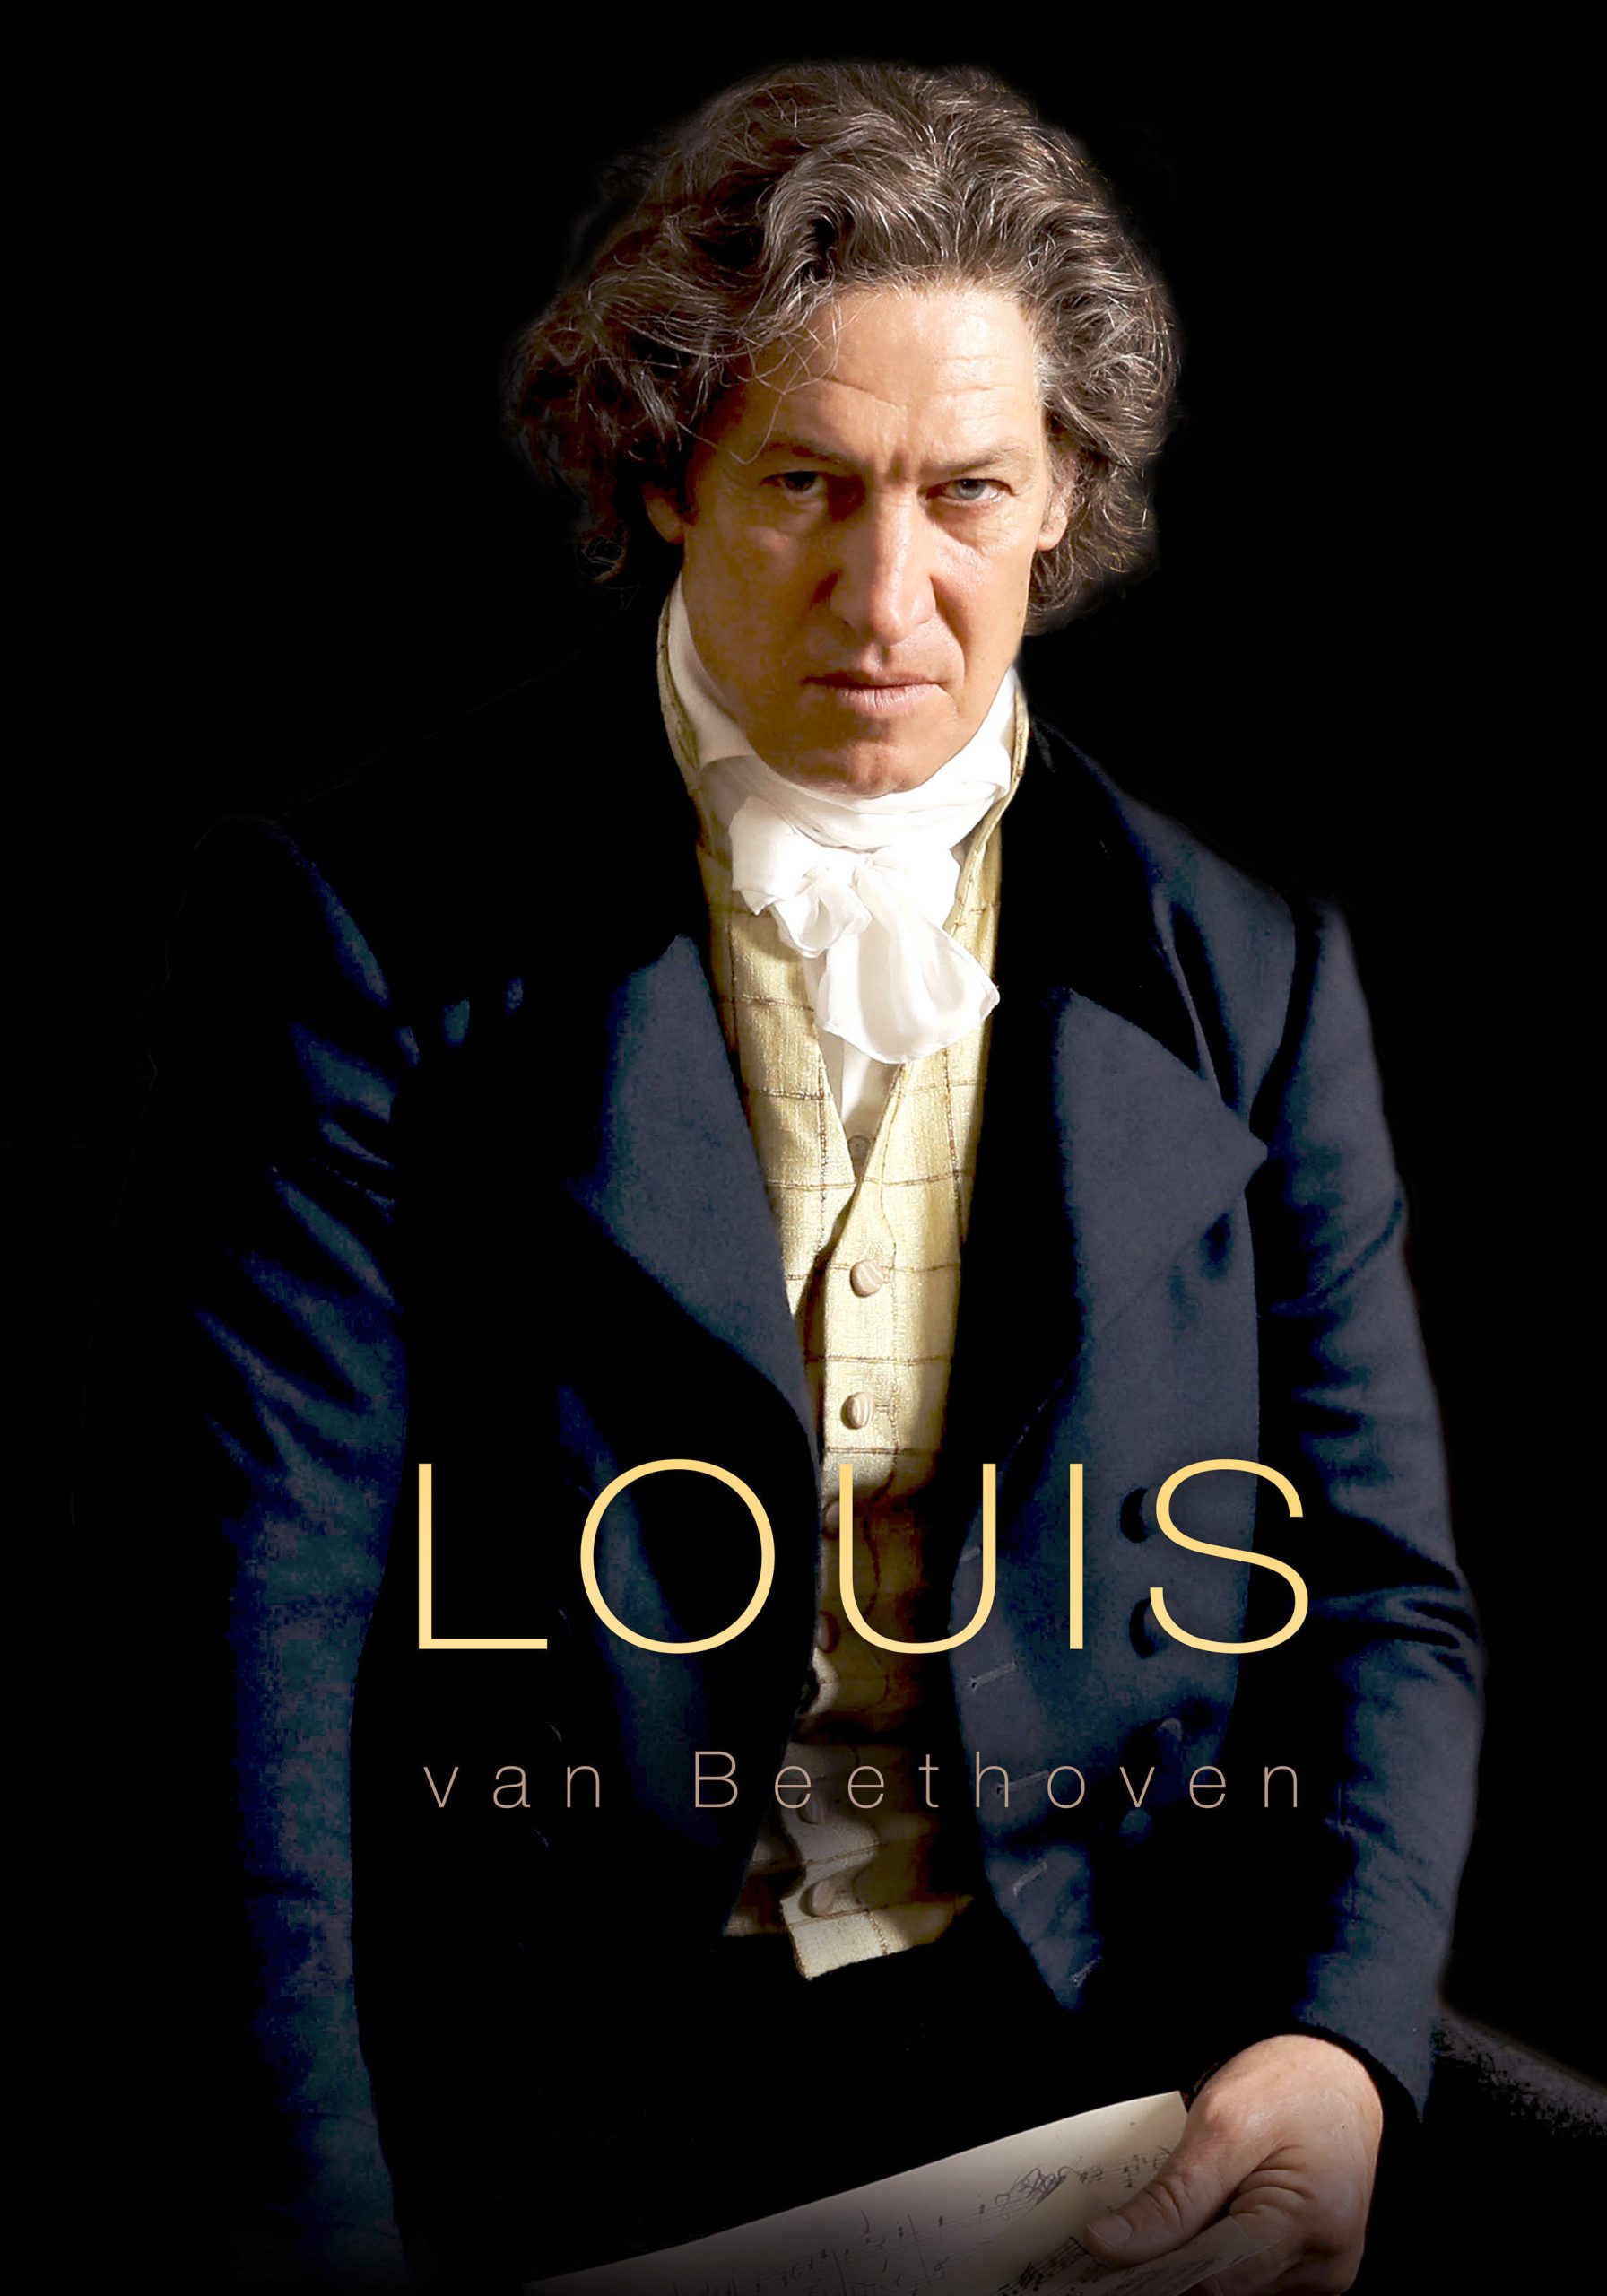 Louis van Beethoven [HD] (2020)